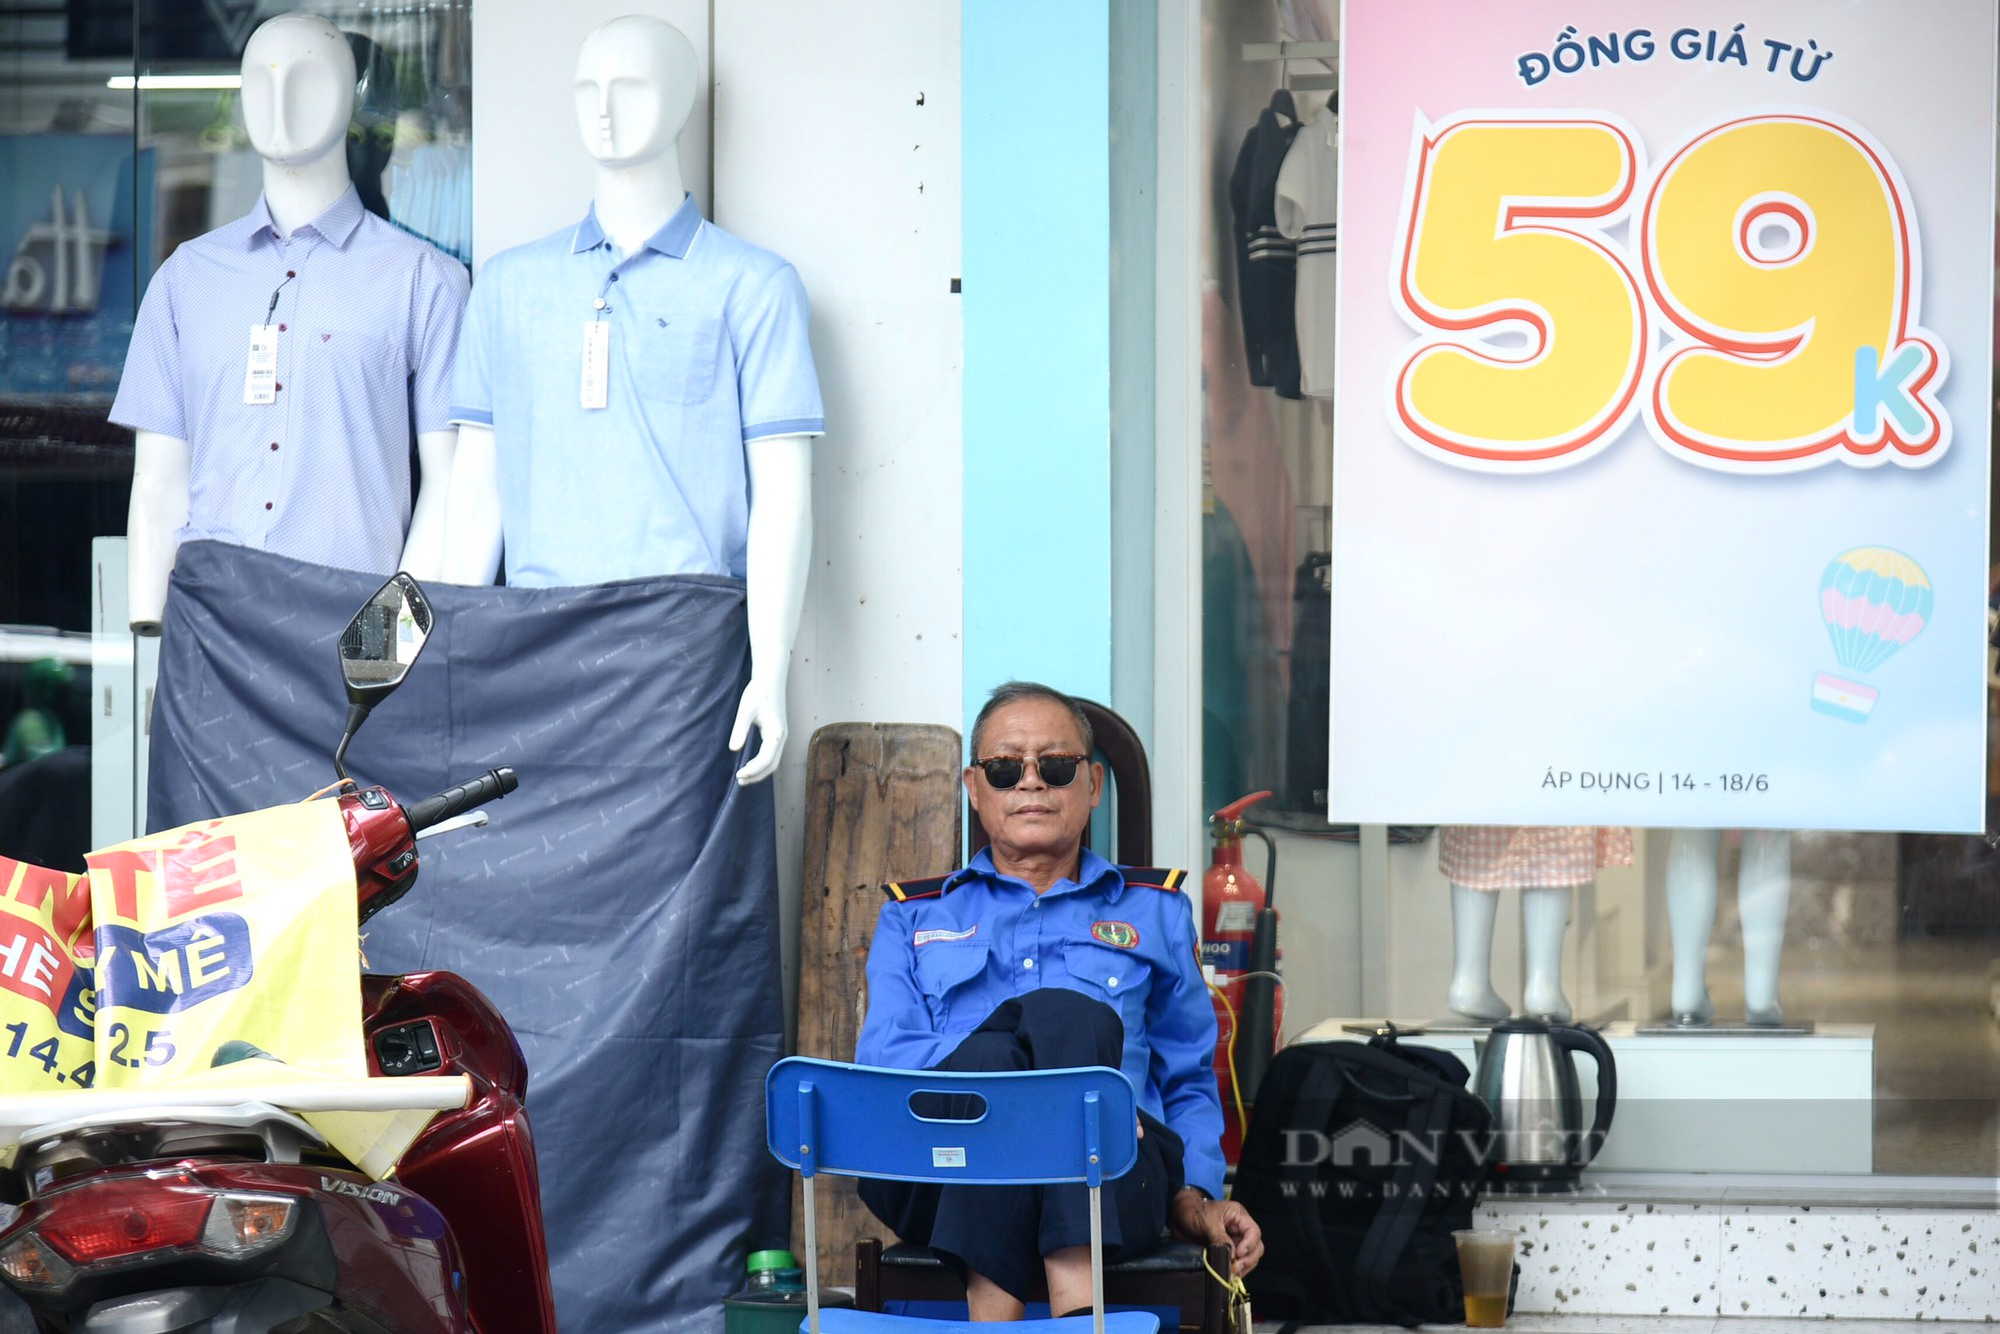 Hàng loạt cửa tiệm tại các tuyến phố thời trang Hà Nội giảm giá nhưng vẫn ế khách - Ảnh 13.